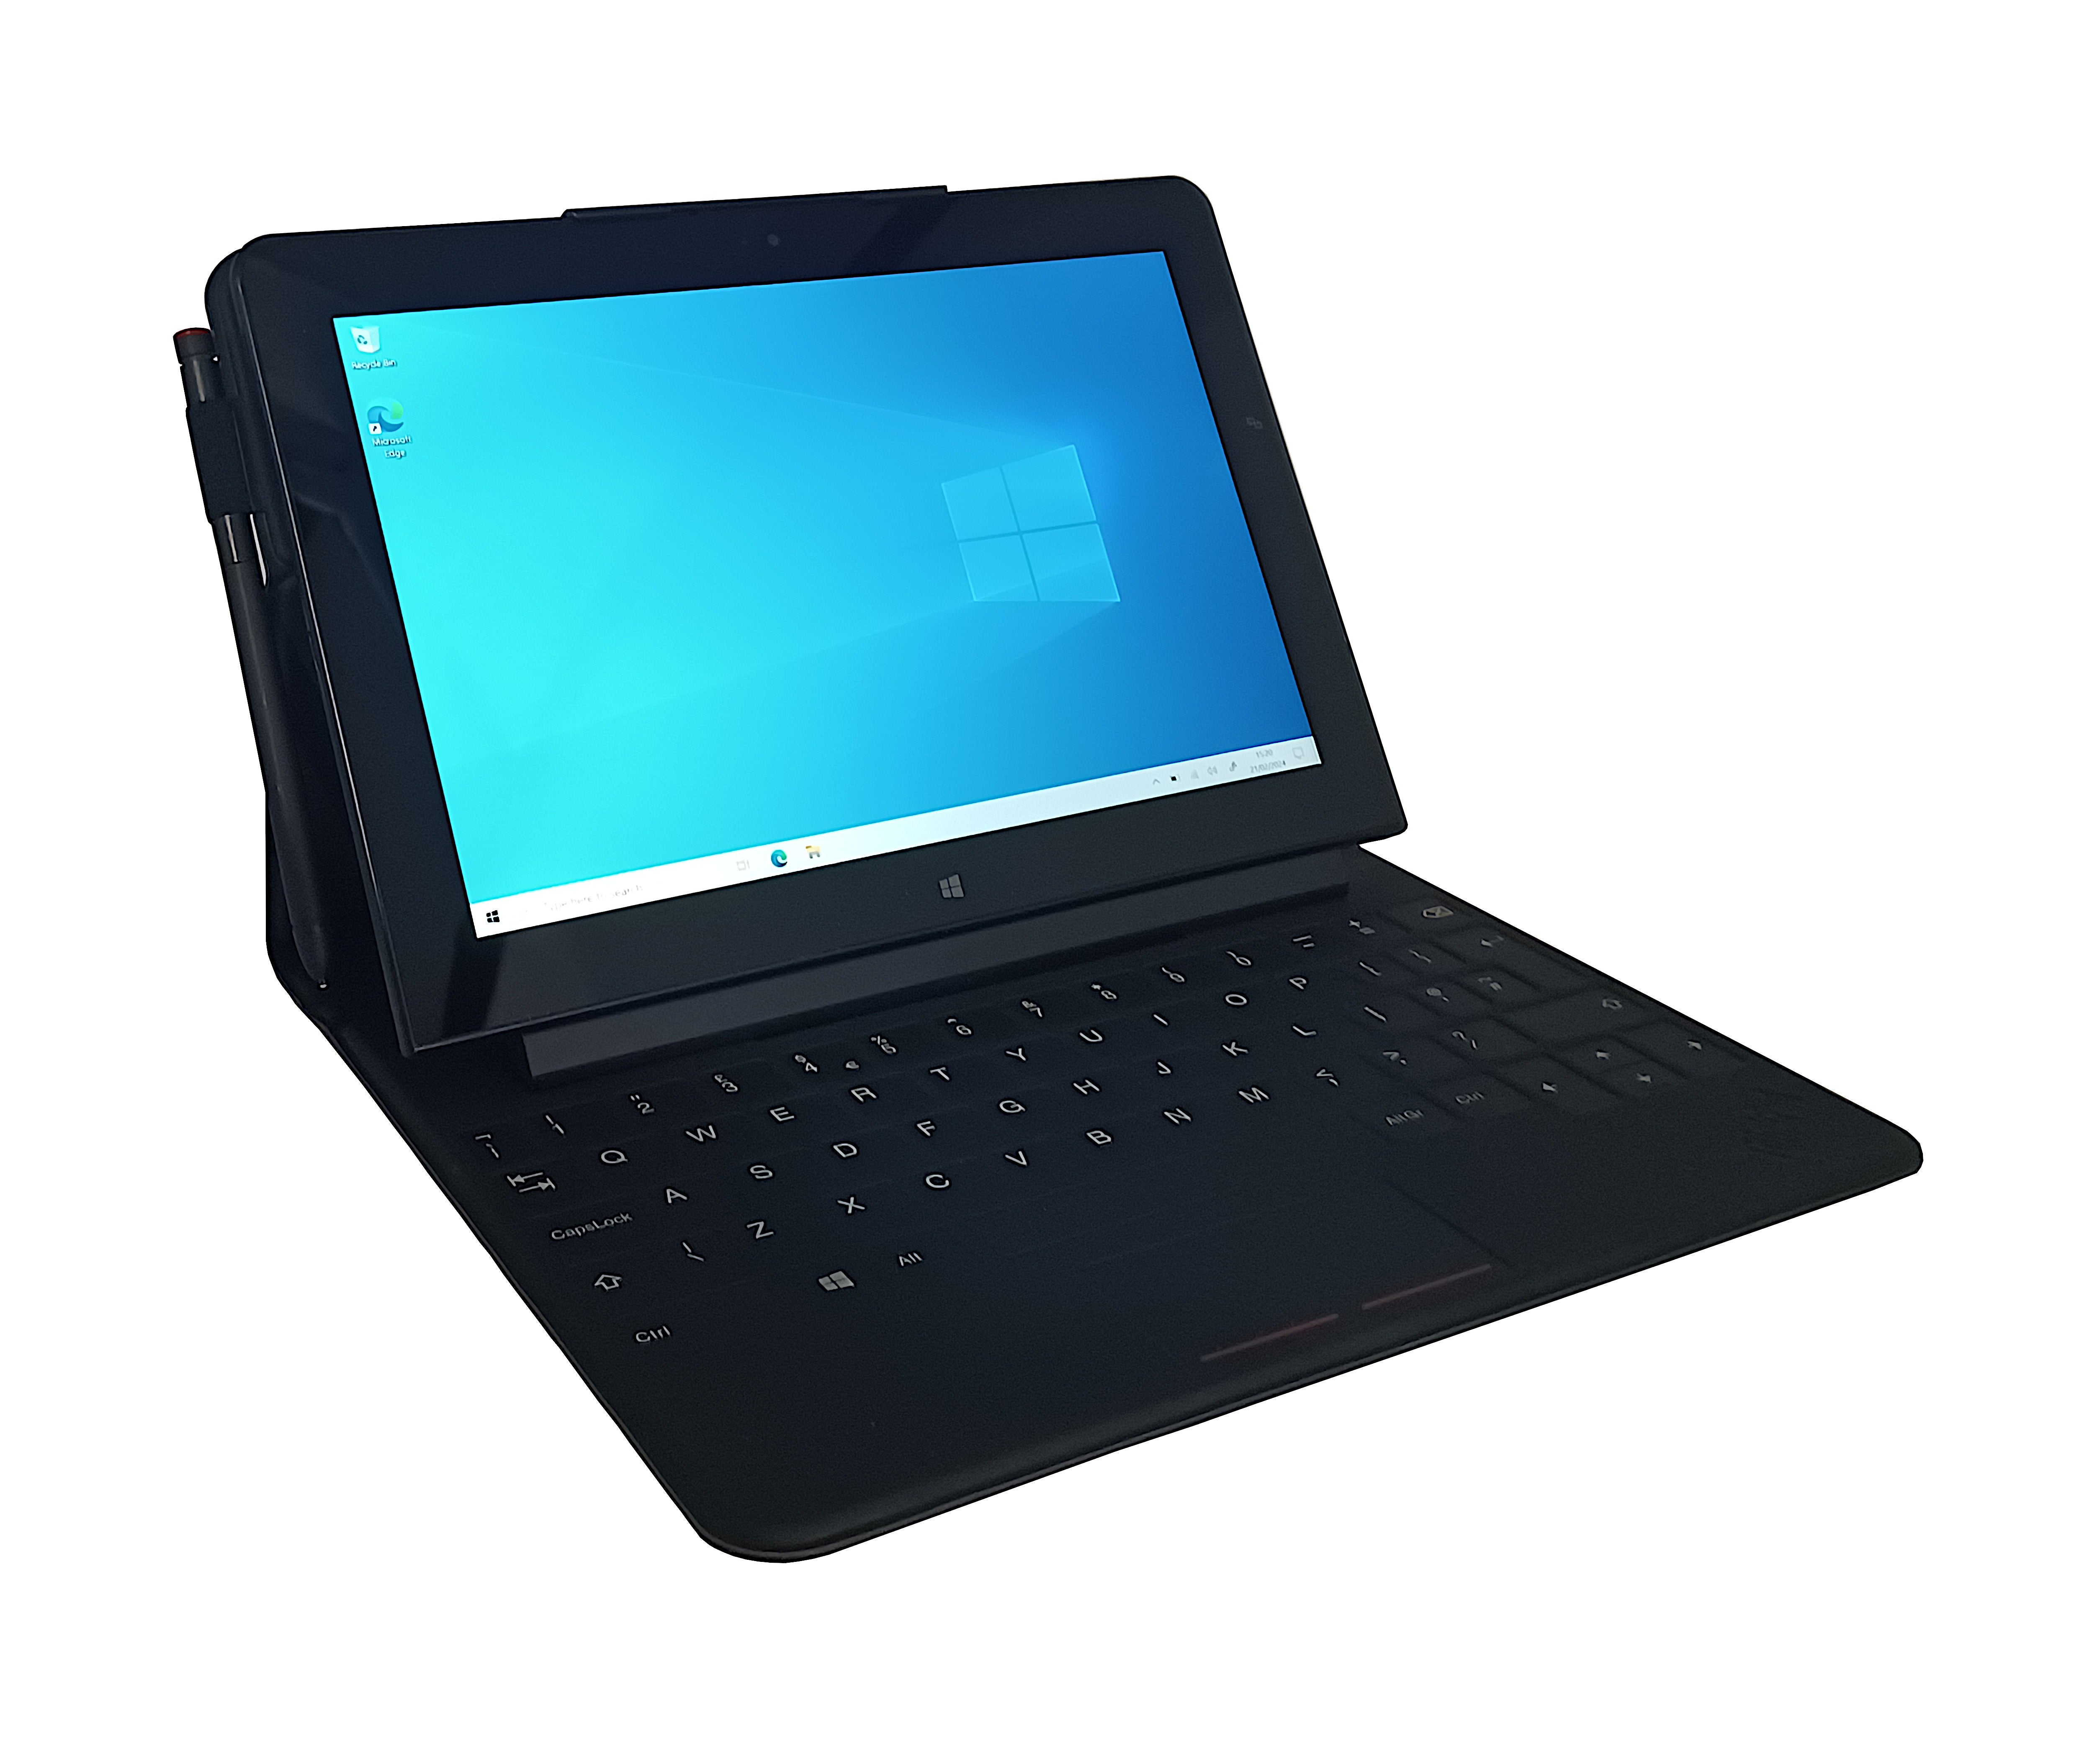 Lenovo Thinkpad 10 Tablet, 10.1" Intel Atom Z3795, 4GB RAM, 64GB SSD